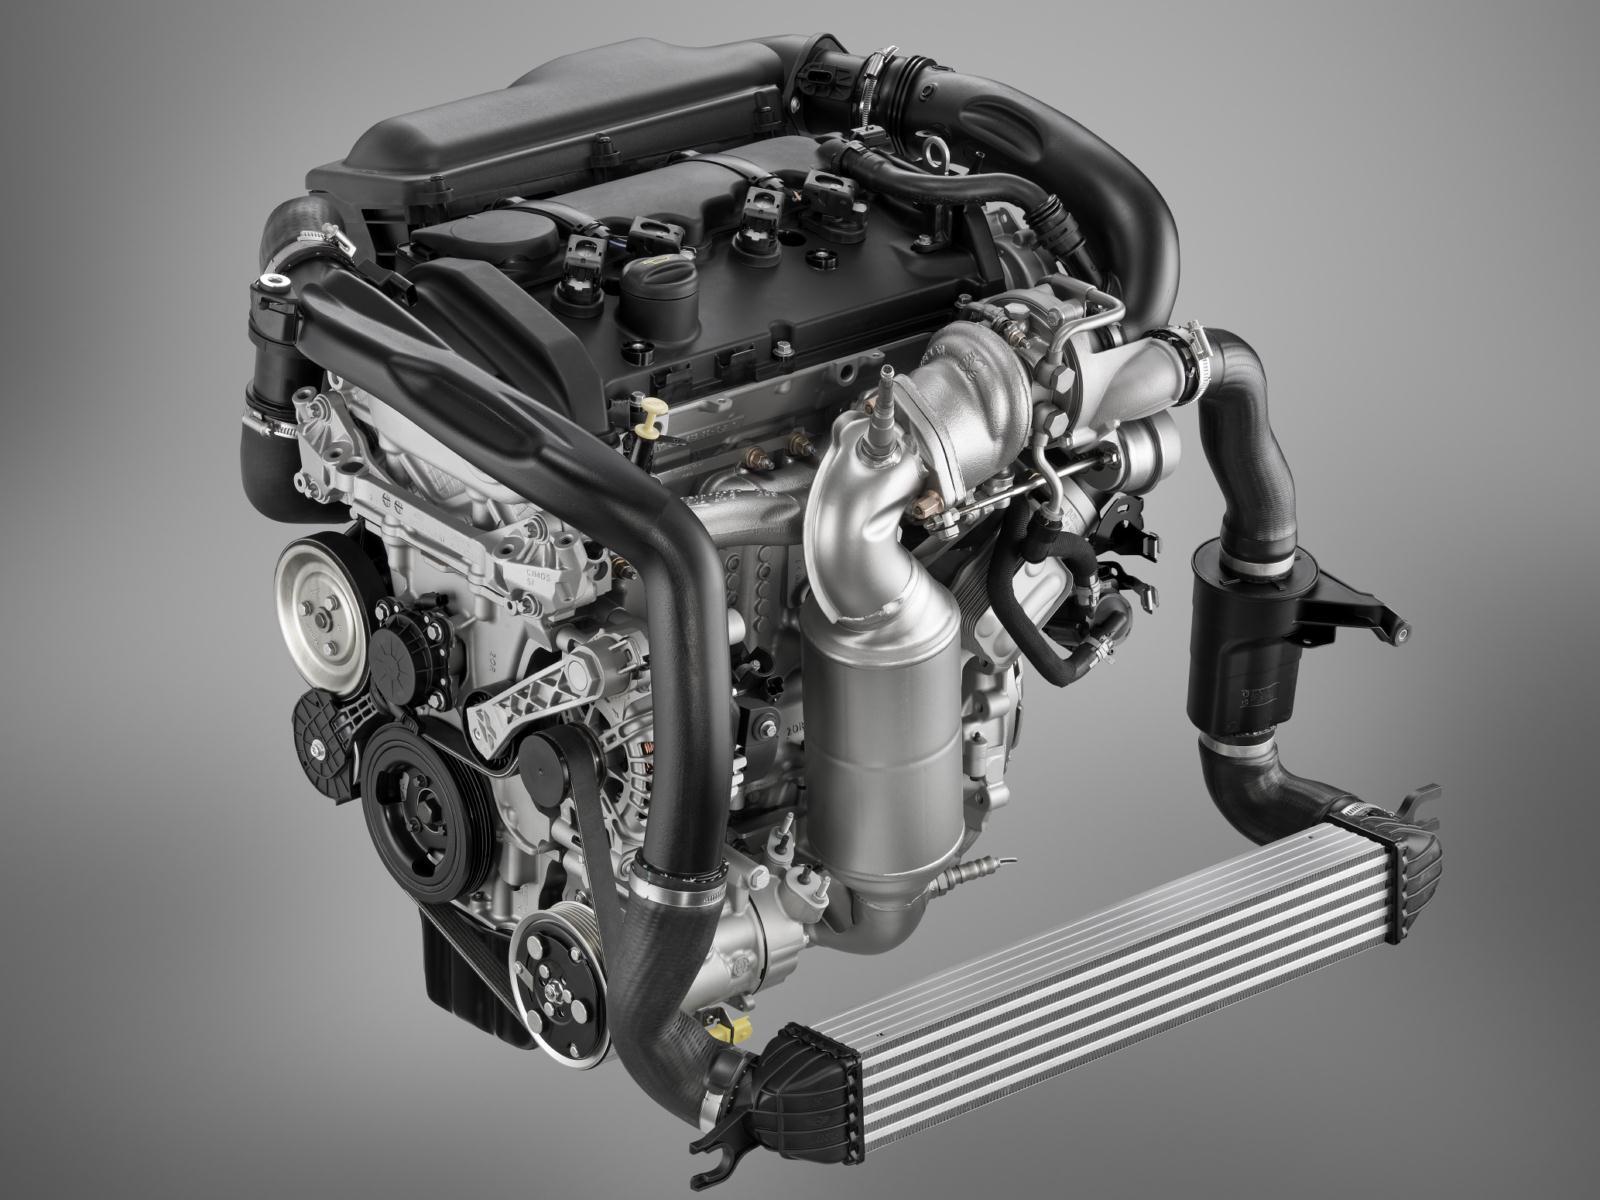 Motoare diesel mai ecpnomice: Mini One D consuma 3.8 litri/100 km in medie si 99 g/km CO2